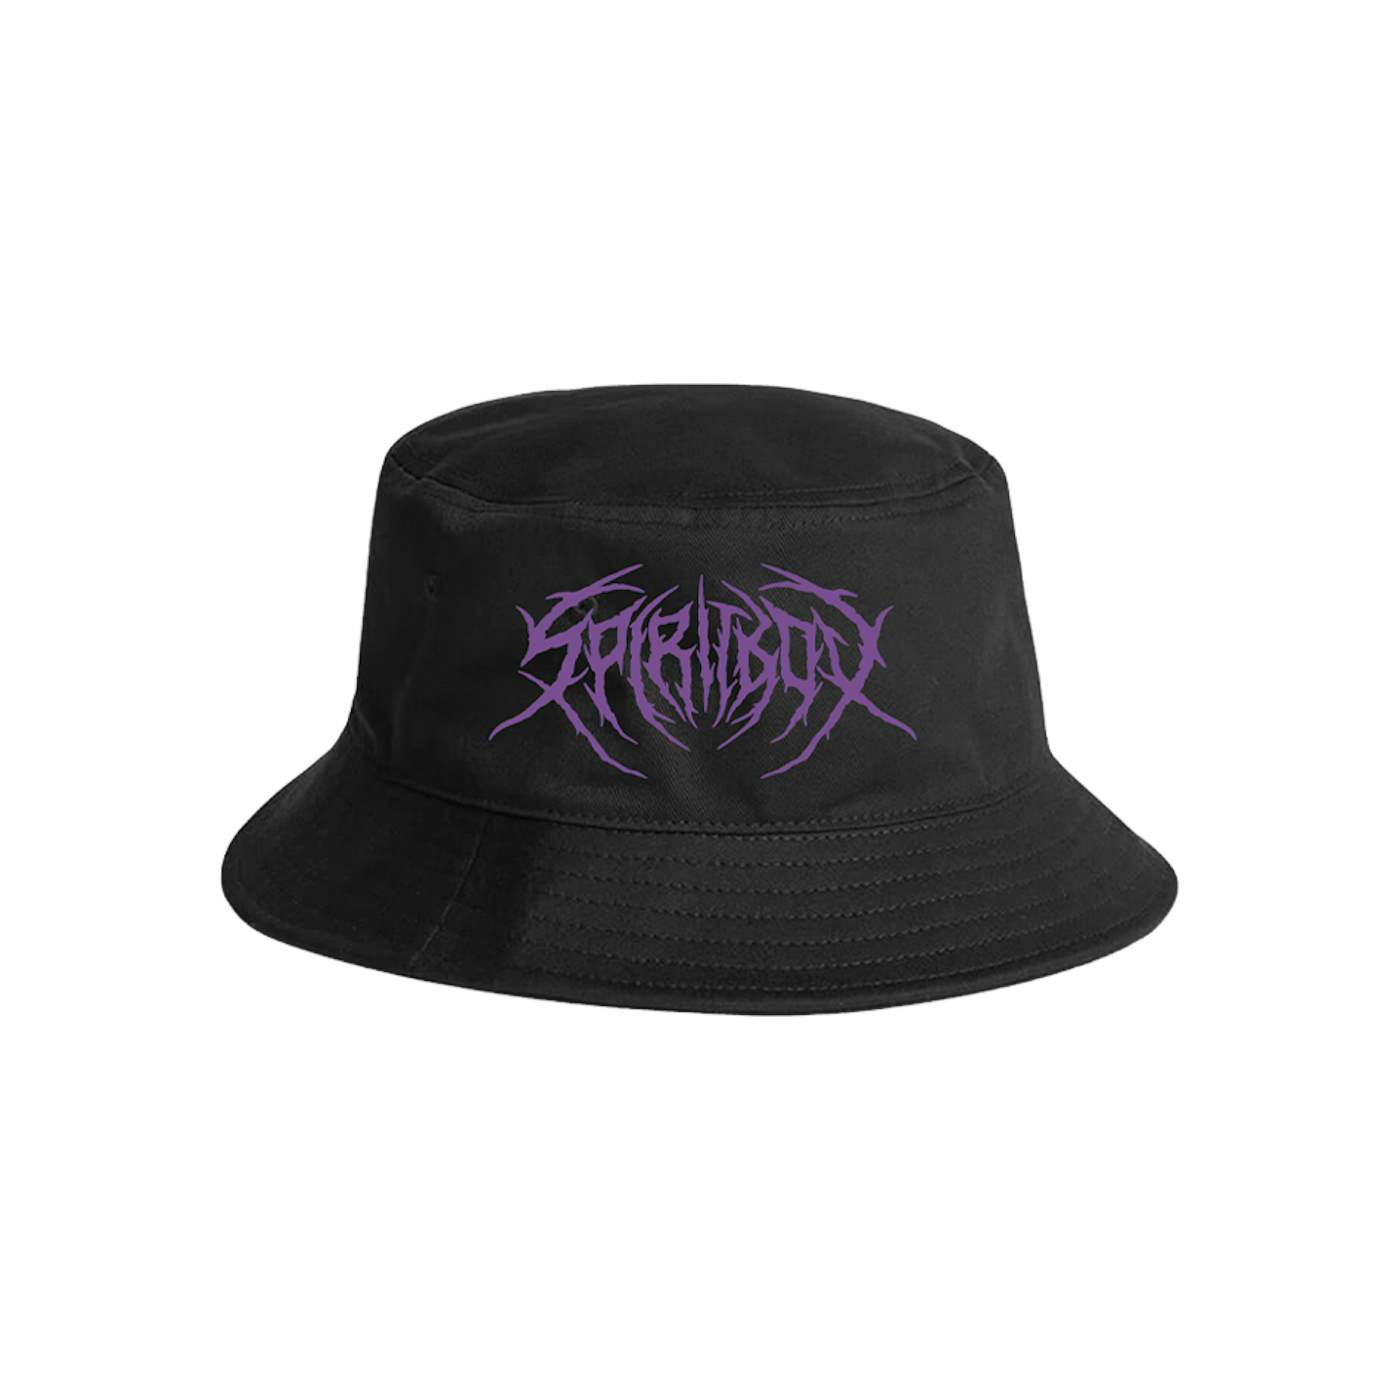 Spiritbox "Death Metal" Bucket Hat